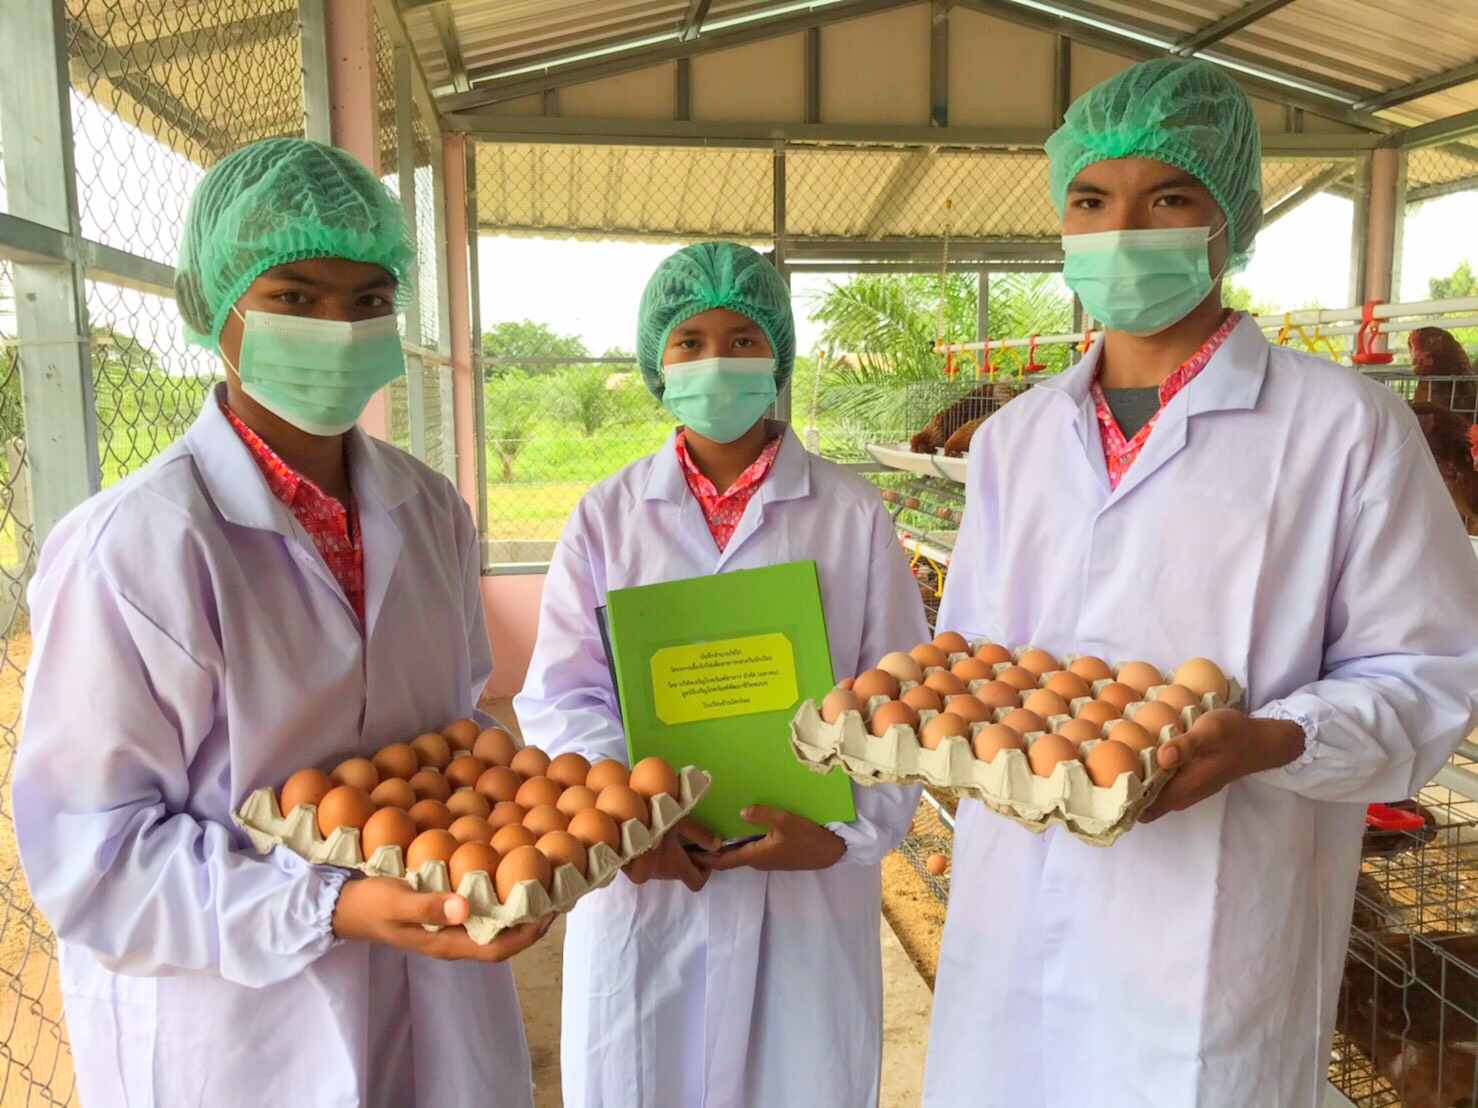 ซีพีเอฟ ชูโมเดล รร.เลี้ยงไก่ไข่ ถ่ายทอดองค์ความรู้เกษตรแผนใหม่และติดตามผลแบบออนไลน์ 